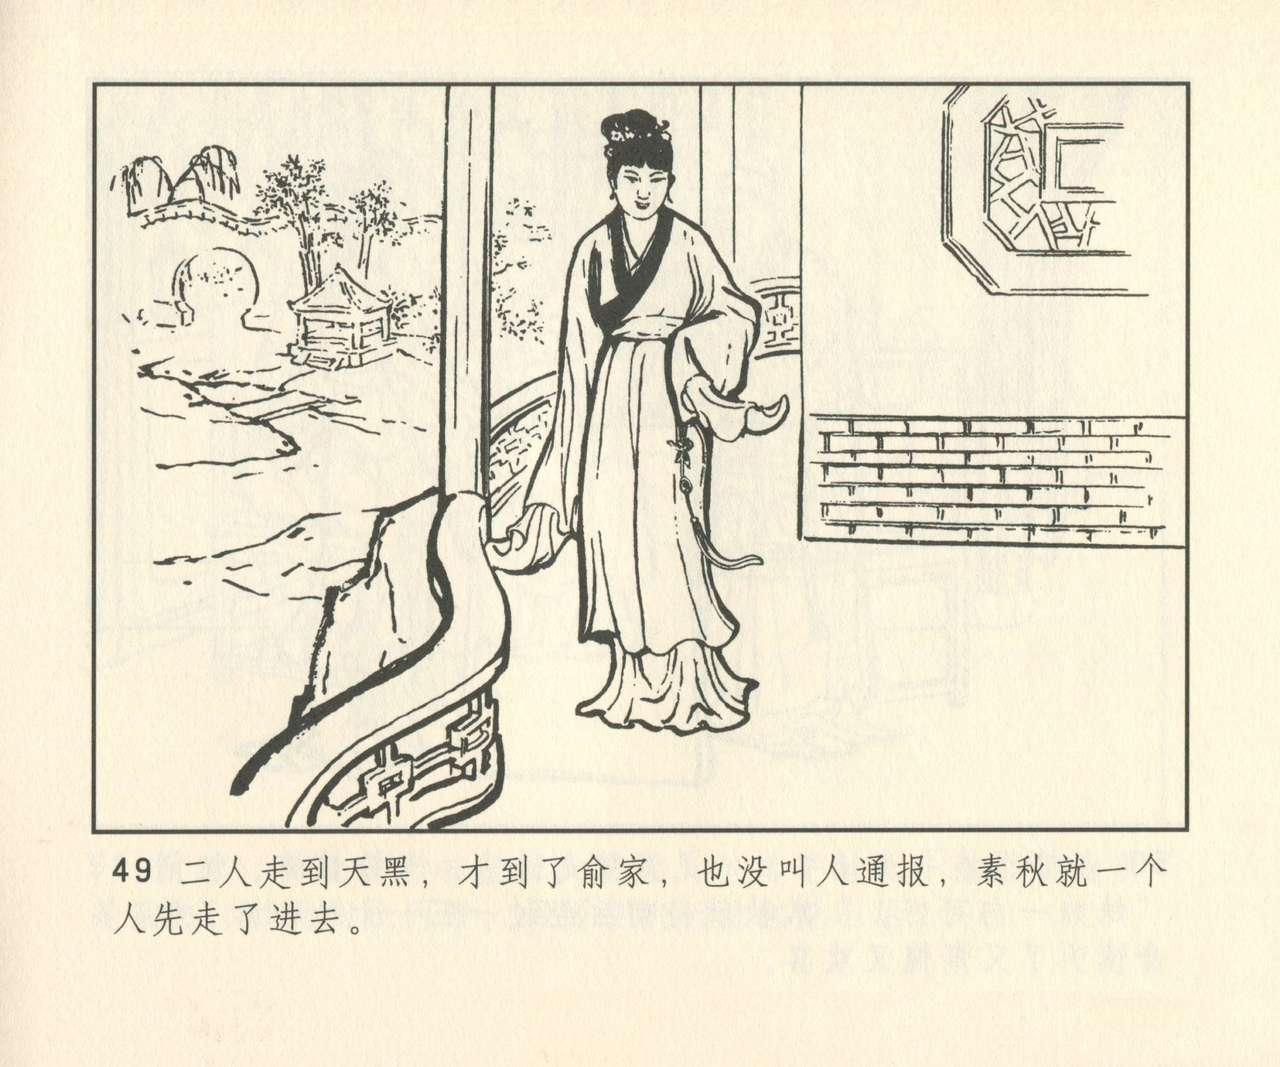 聊斋志异 张玮等绘 天津人民美术出版社 卷二十一 ~ 三十 329